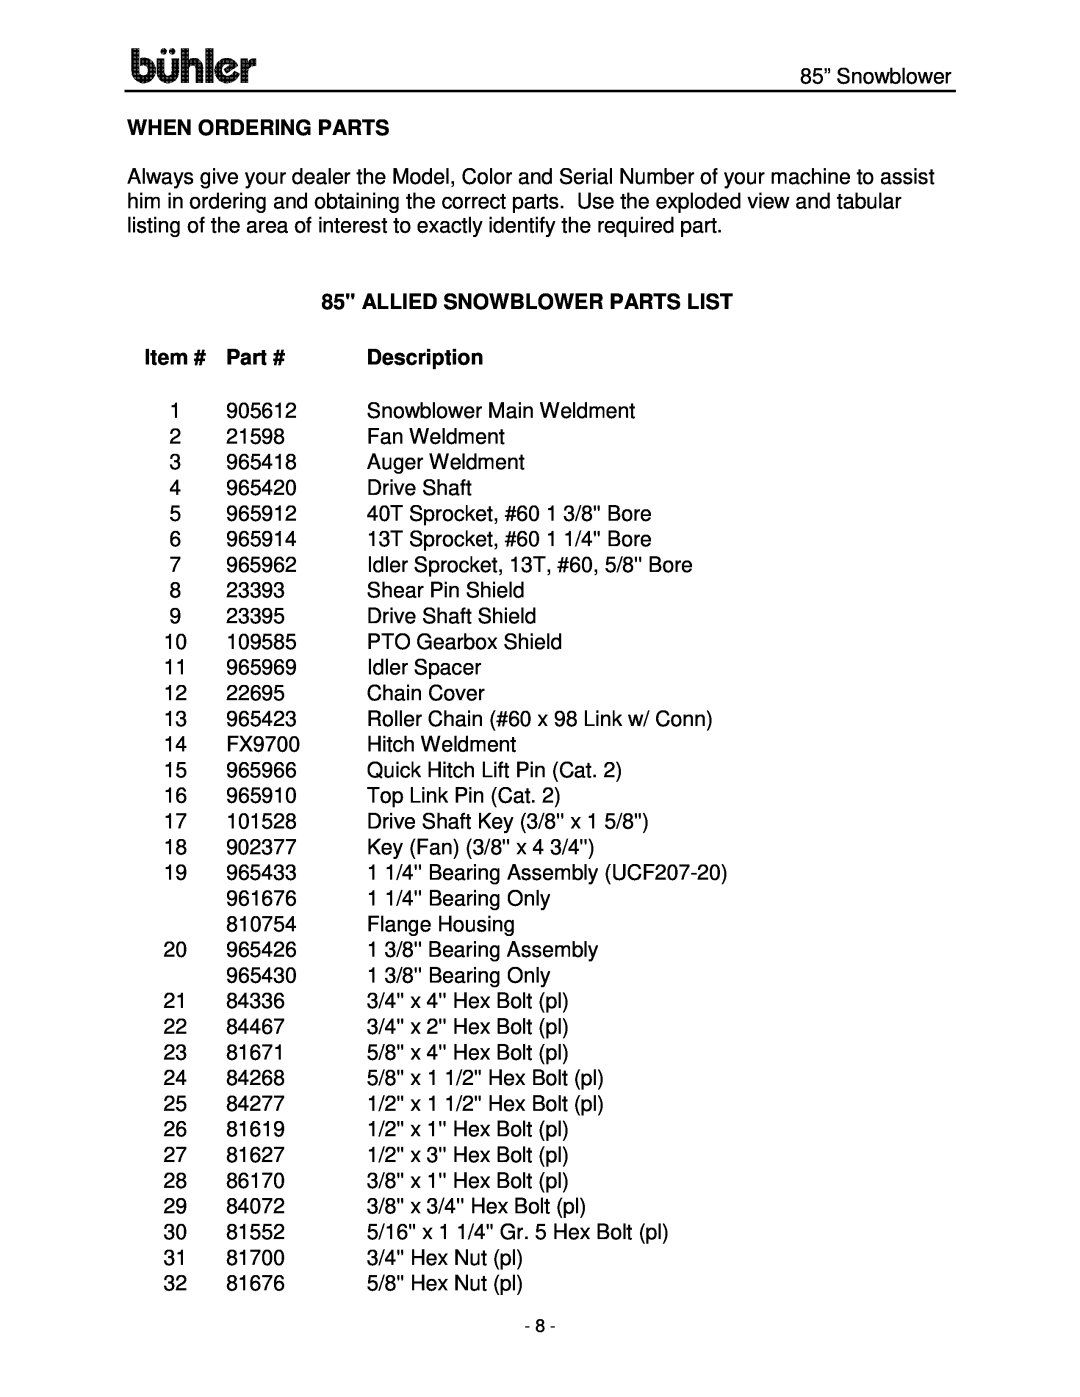 Buhler FK314 manual When Ordering Parts, Item #, Description, Allied Snowblower Parts List 